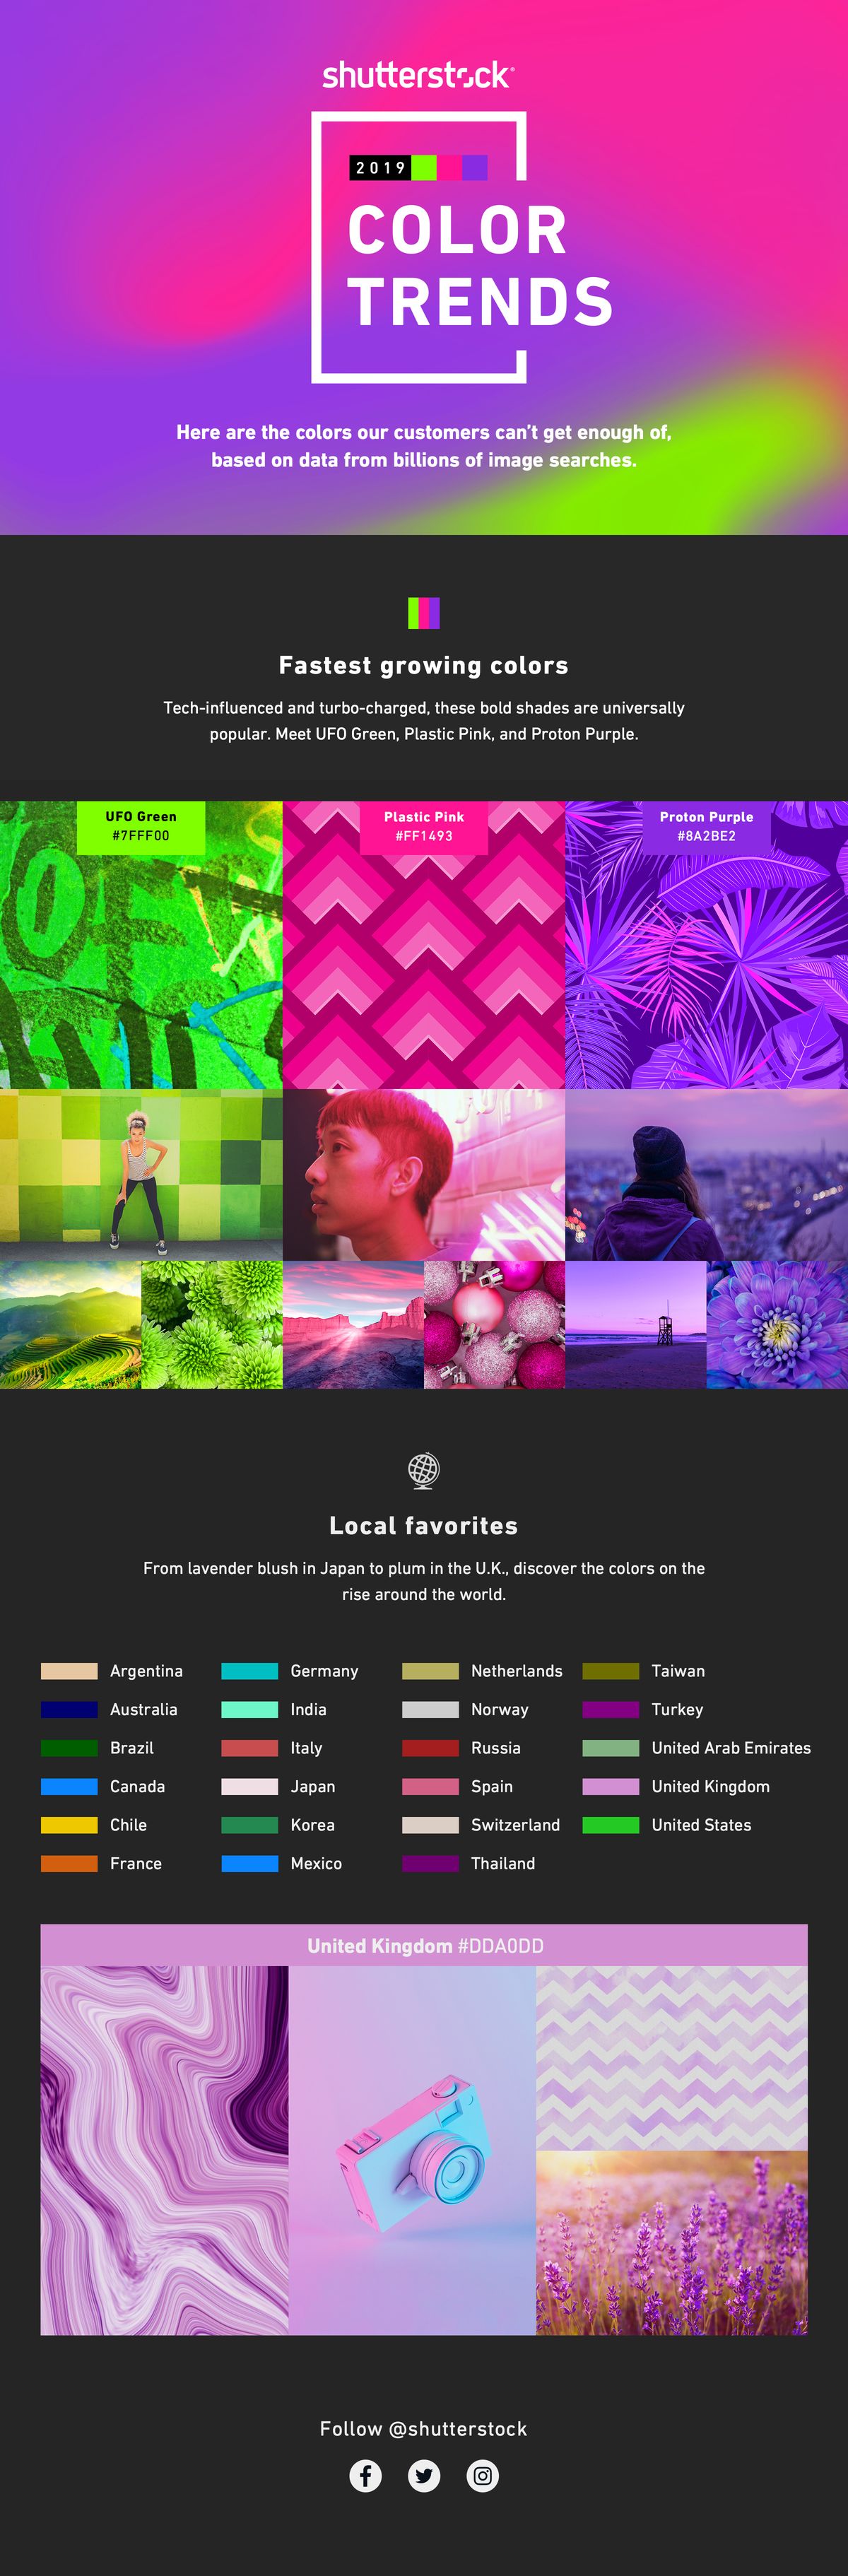 Shutterstock 2019 Farbtrendbericht